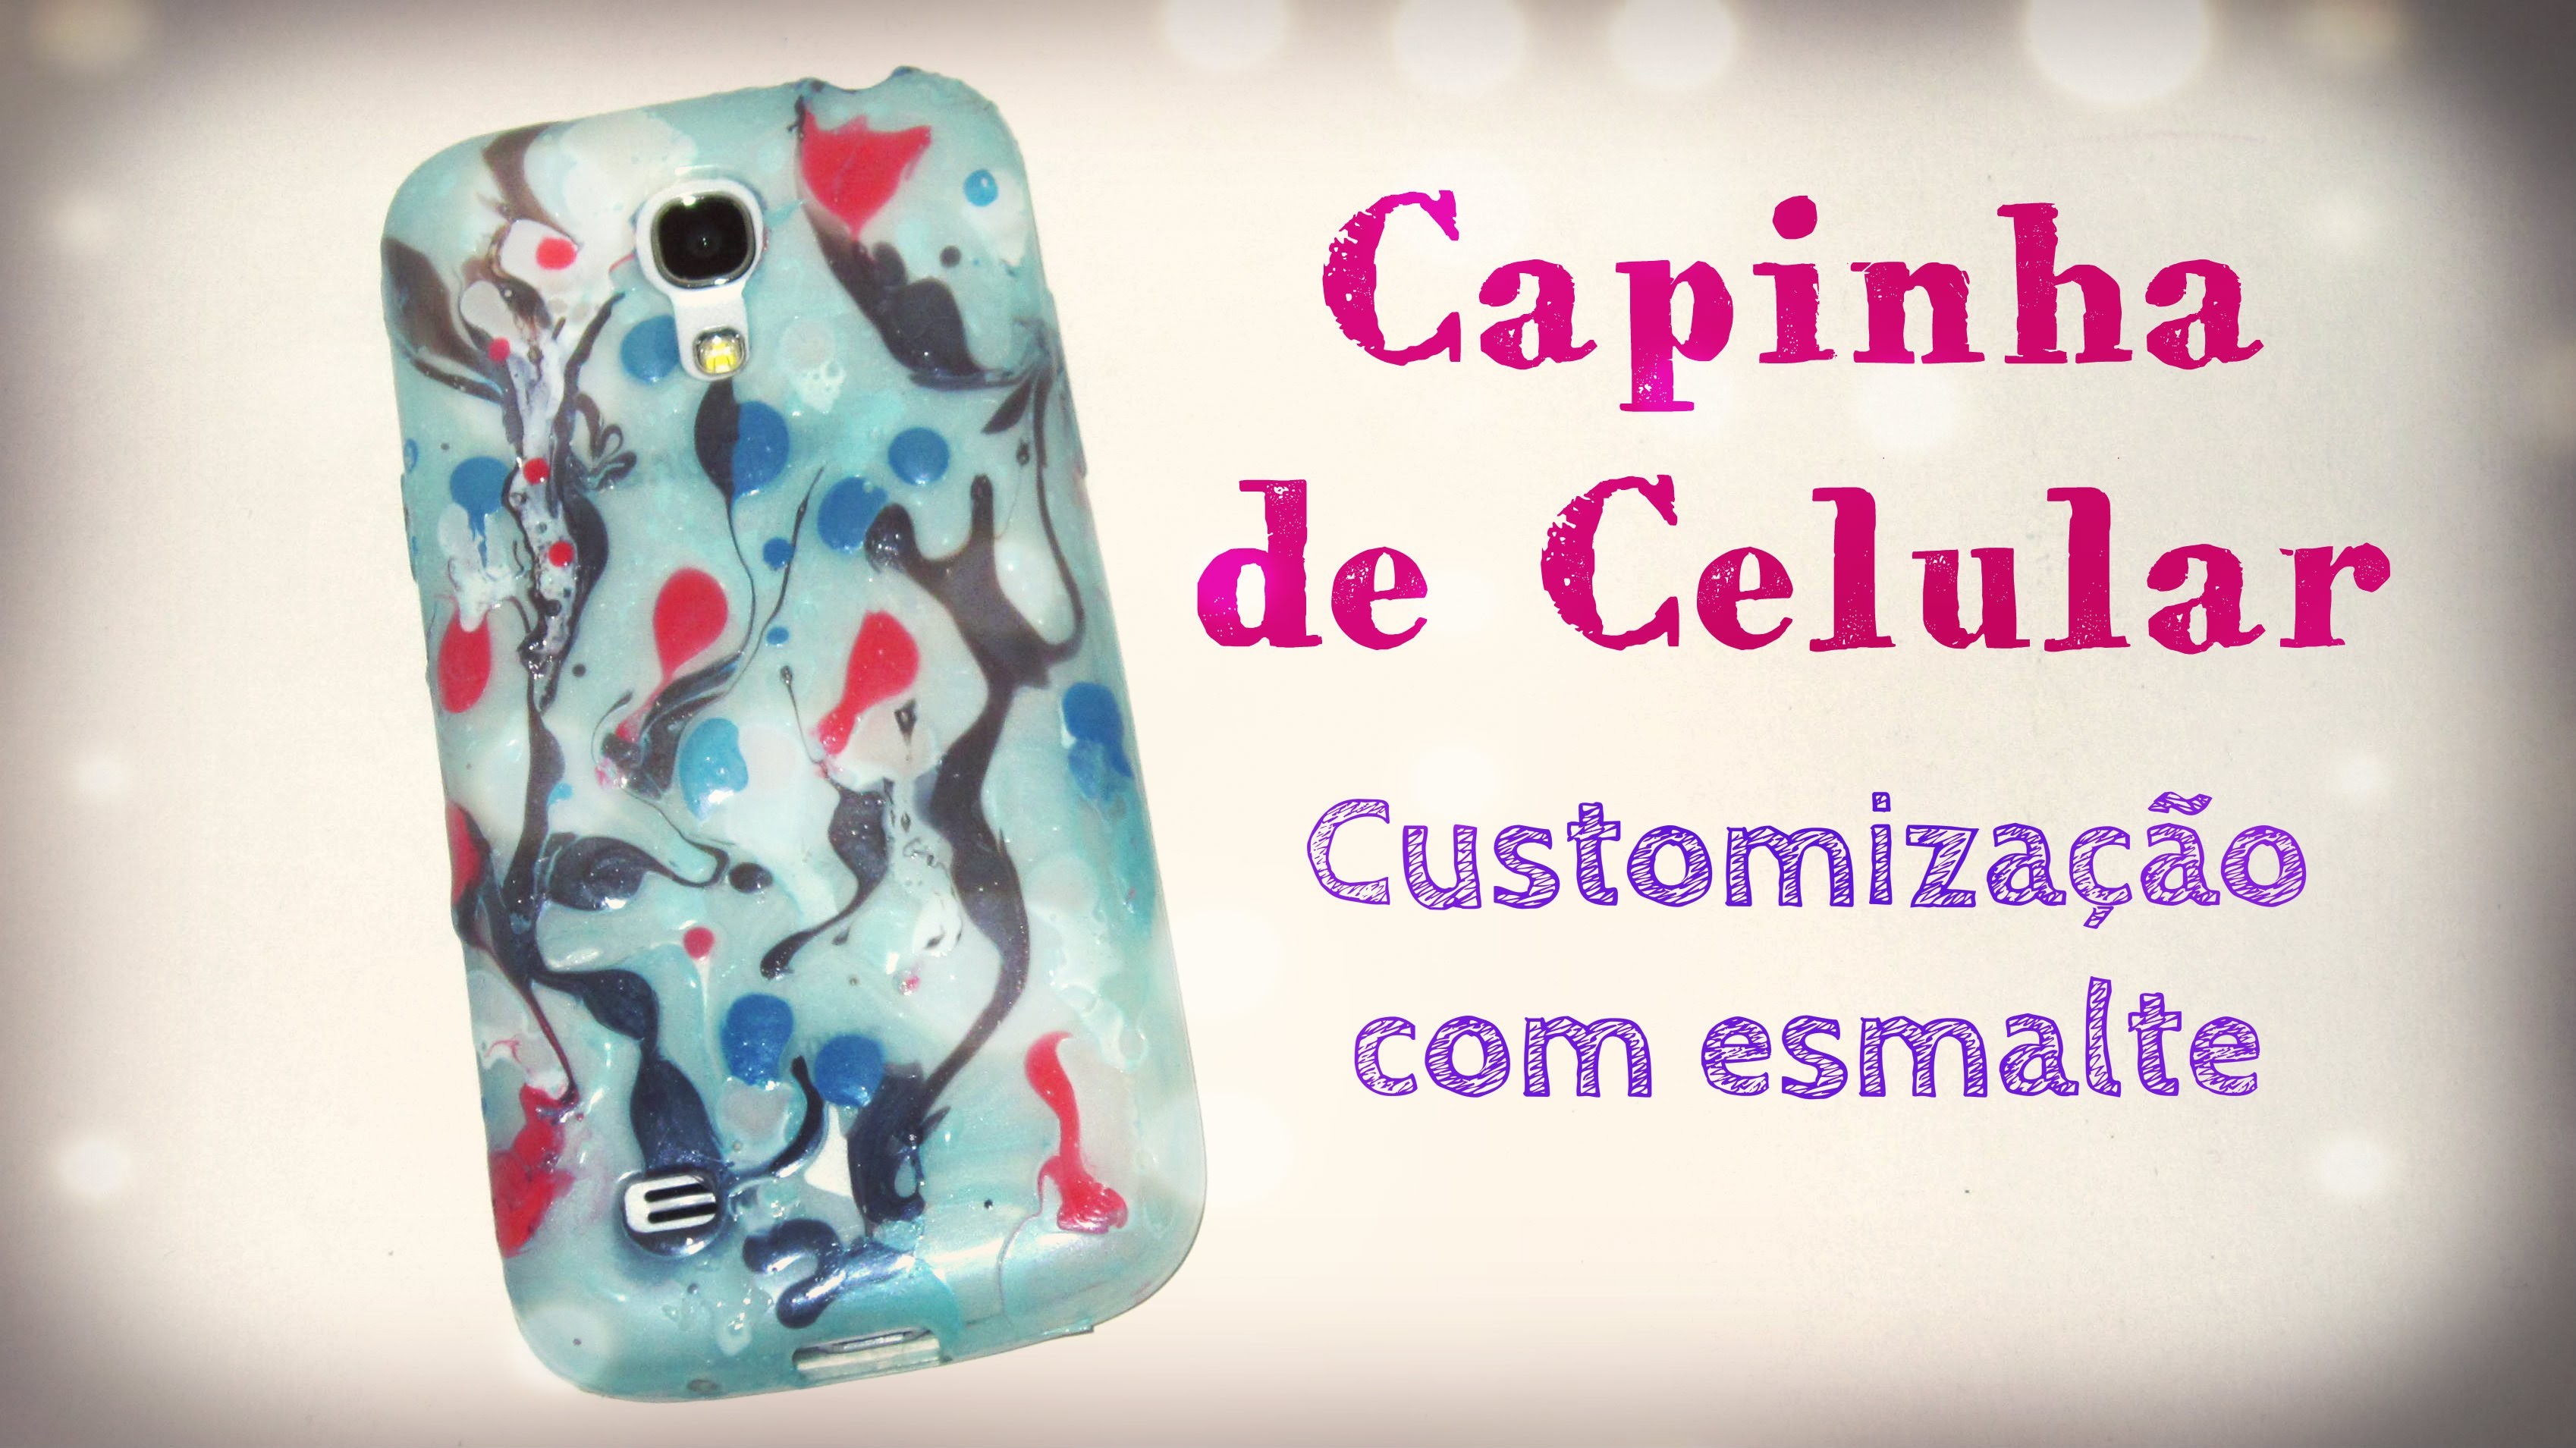 DIY Capinha de Celular - Customização com esmalte